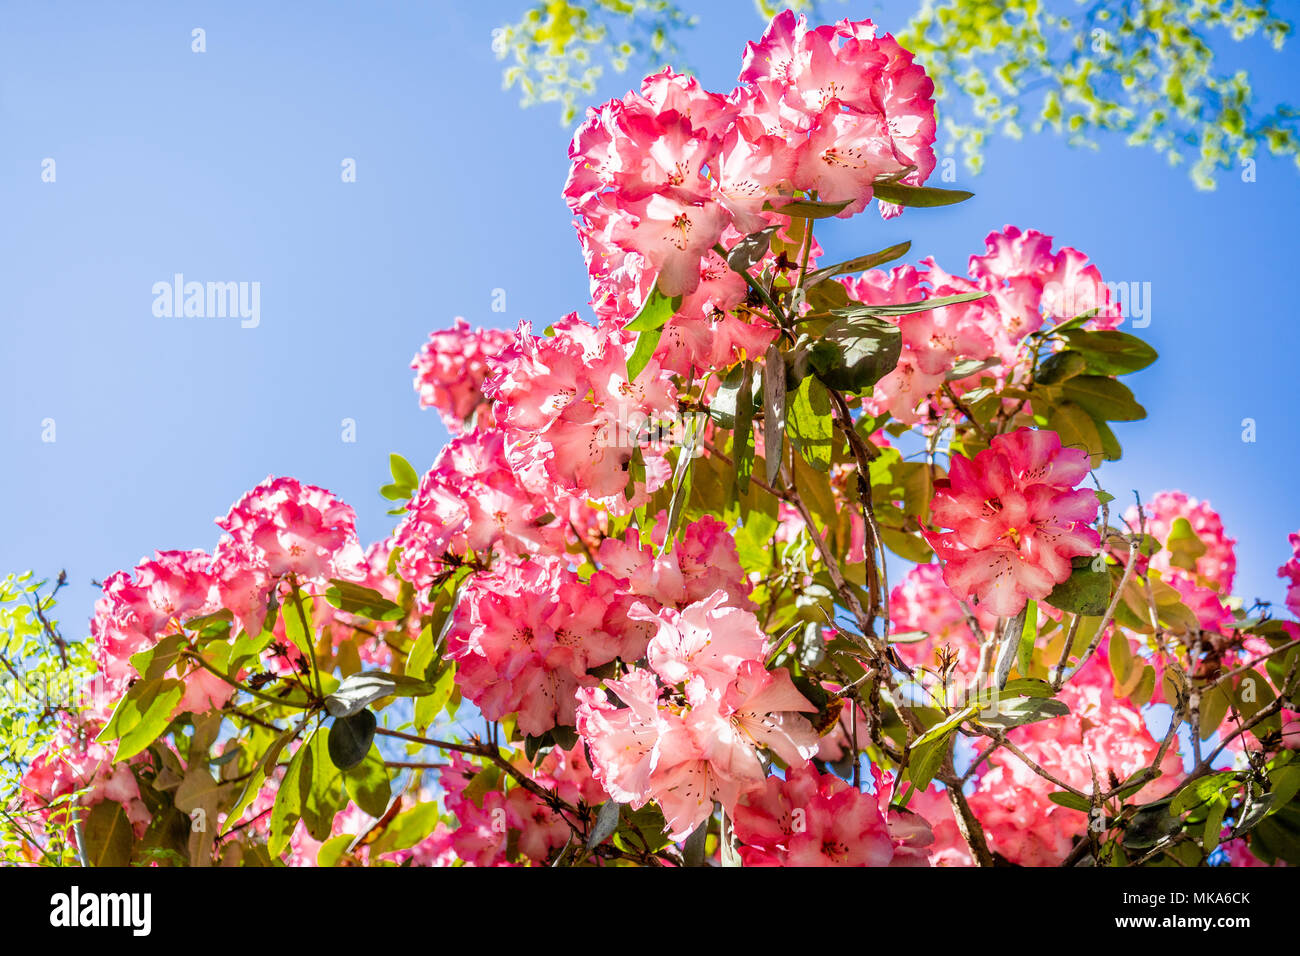 Rosa Rhododendron Macrophyllum blüht im Frühling vor blauem Himmel, die Pflanze ist heimisch an der Pazifikküste Nordamerikas Stockfoto